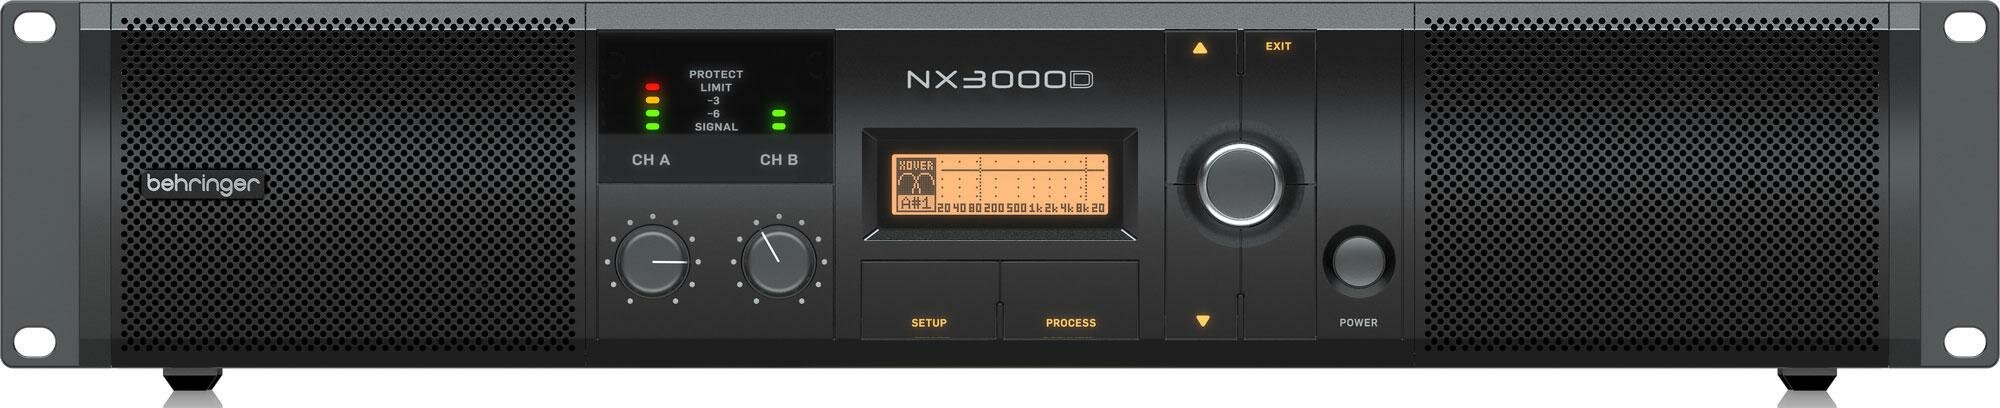 BEHRINGER NX3000D профессиональный усилитель мощности с DSP 3000 Вт